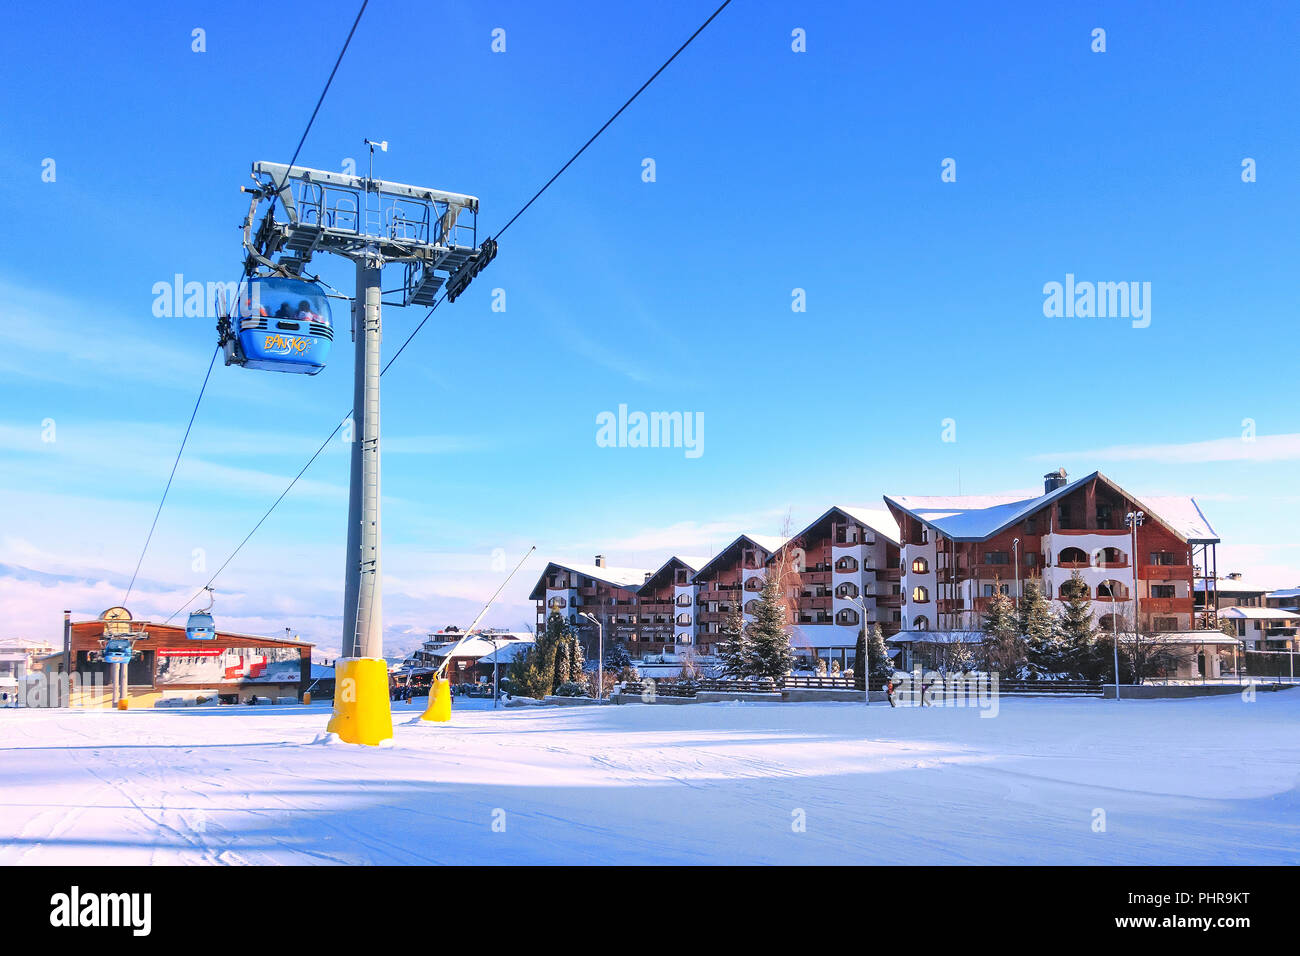 Bansko, Bulgarien - Januar 22, 2018: Winter Skigebiet Bansko mit Skipiste, Kabinen, Menschen und Berge Stockfoto